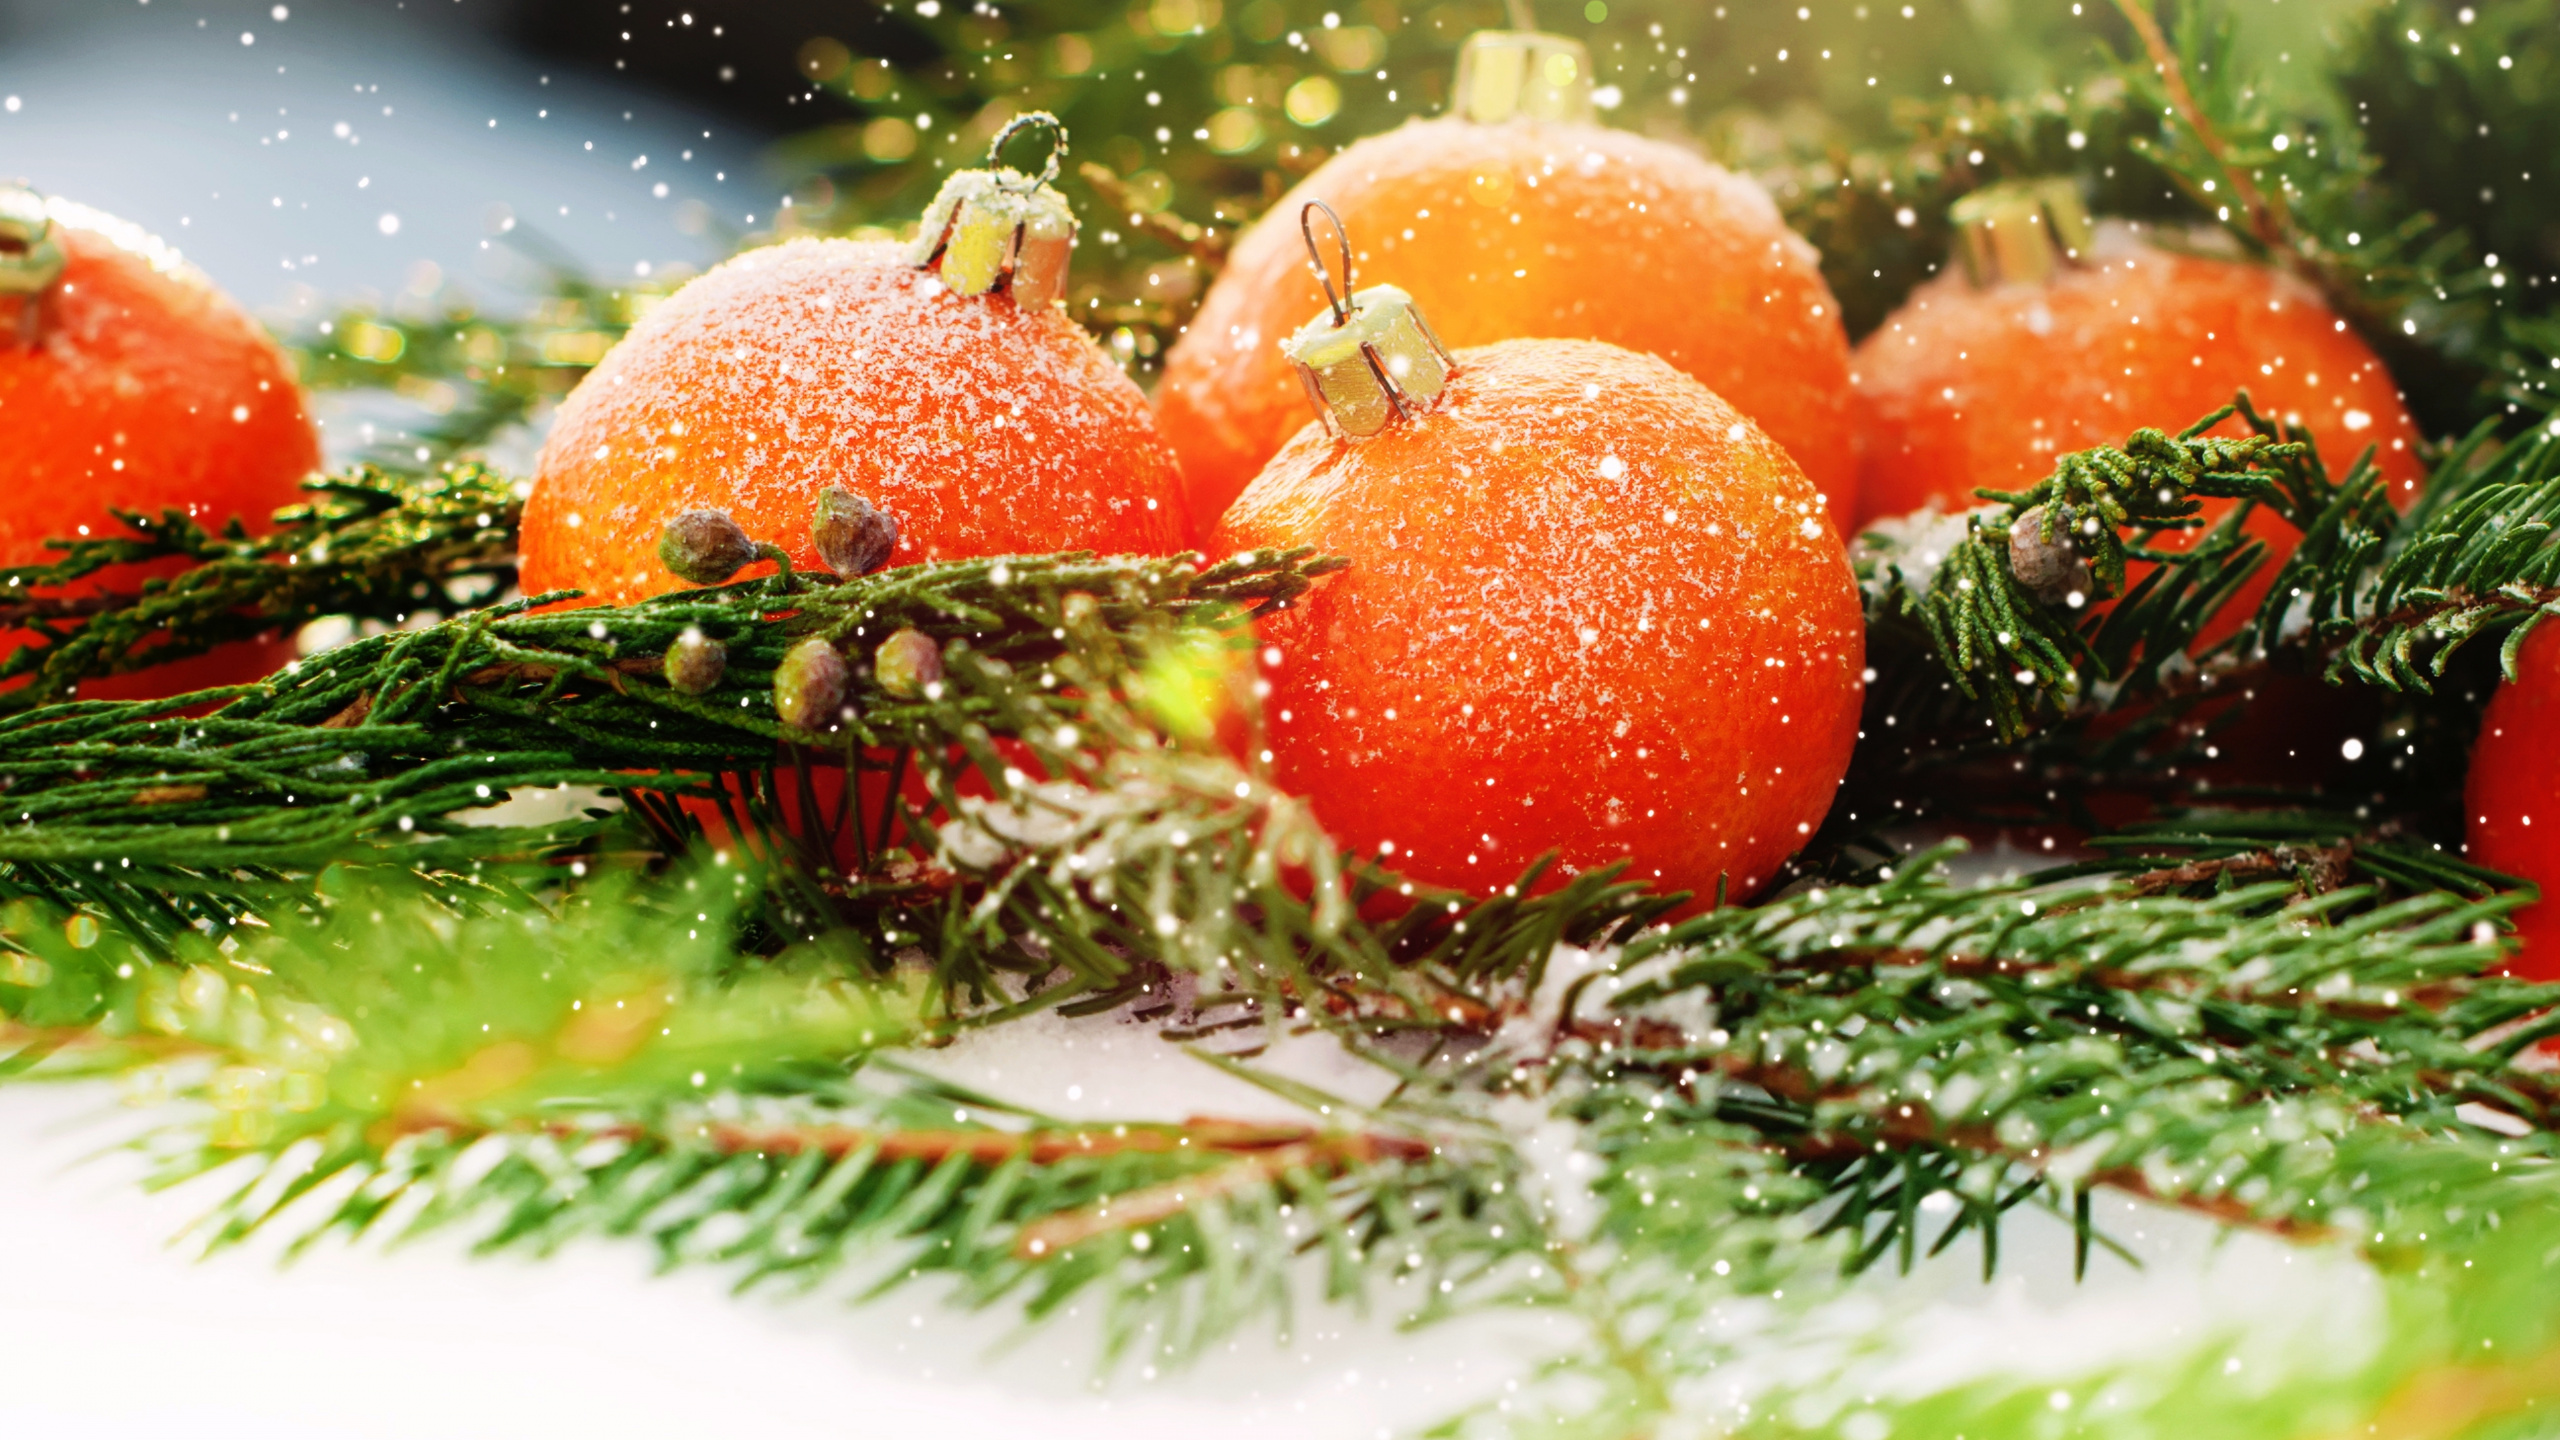 El Día De Navidad, Nochevieja, la Comida Vegetariana, Alimento, Vegetal. Wallpaper in 2560x1440 Resolution